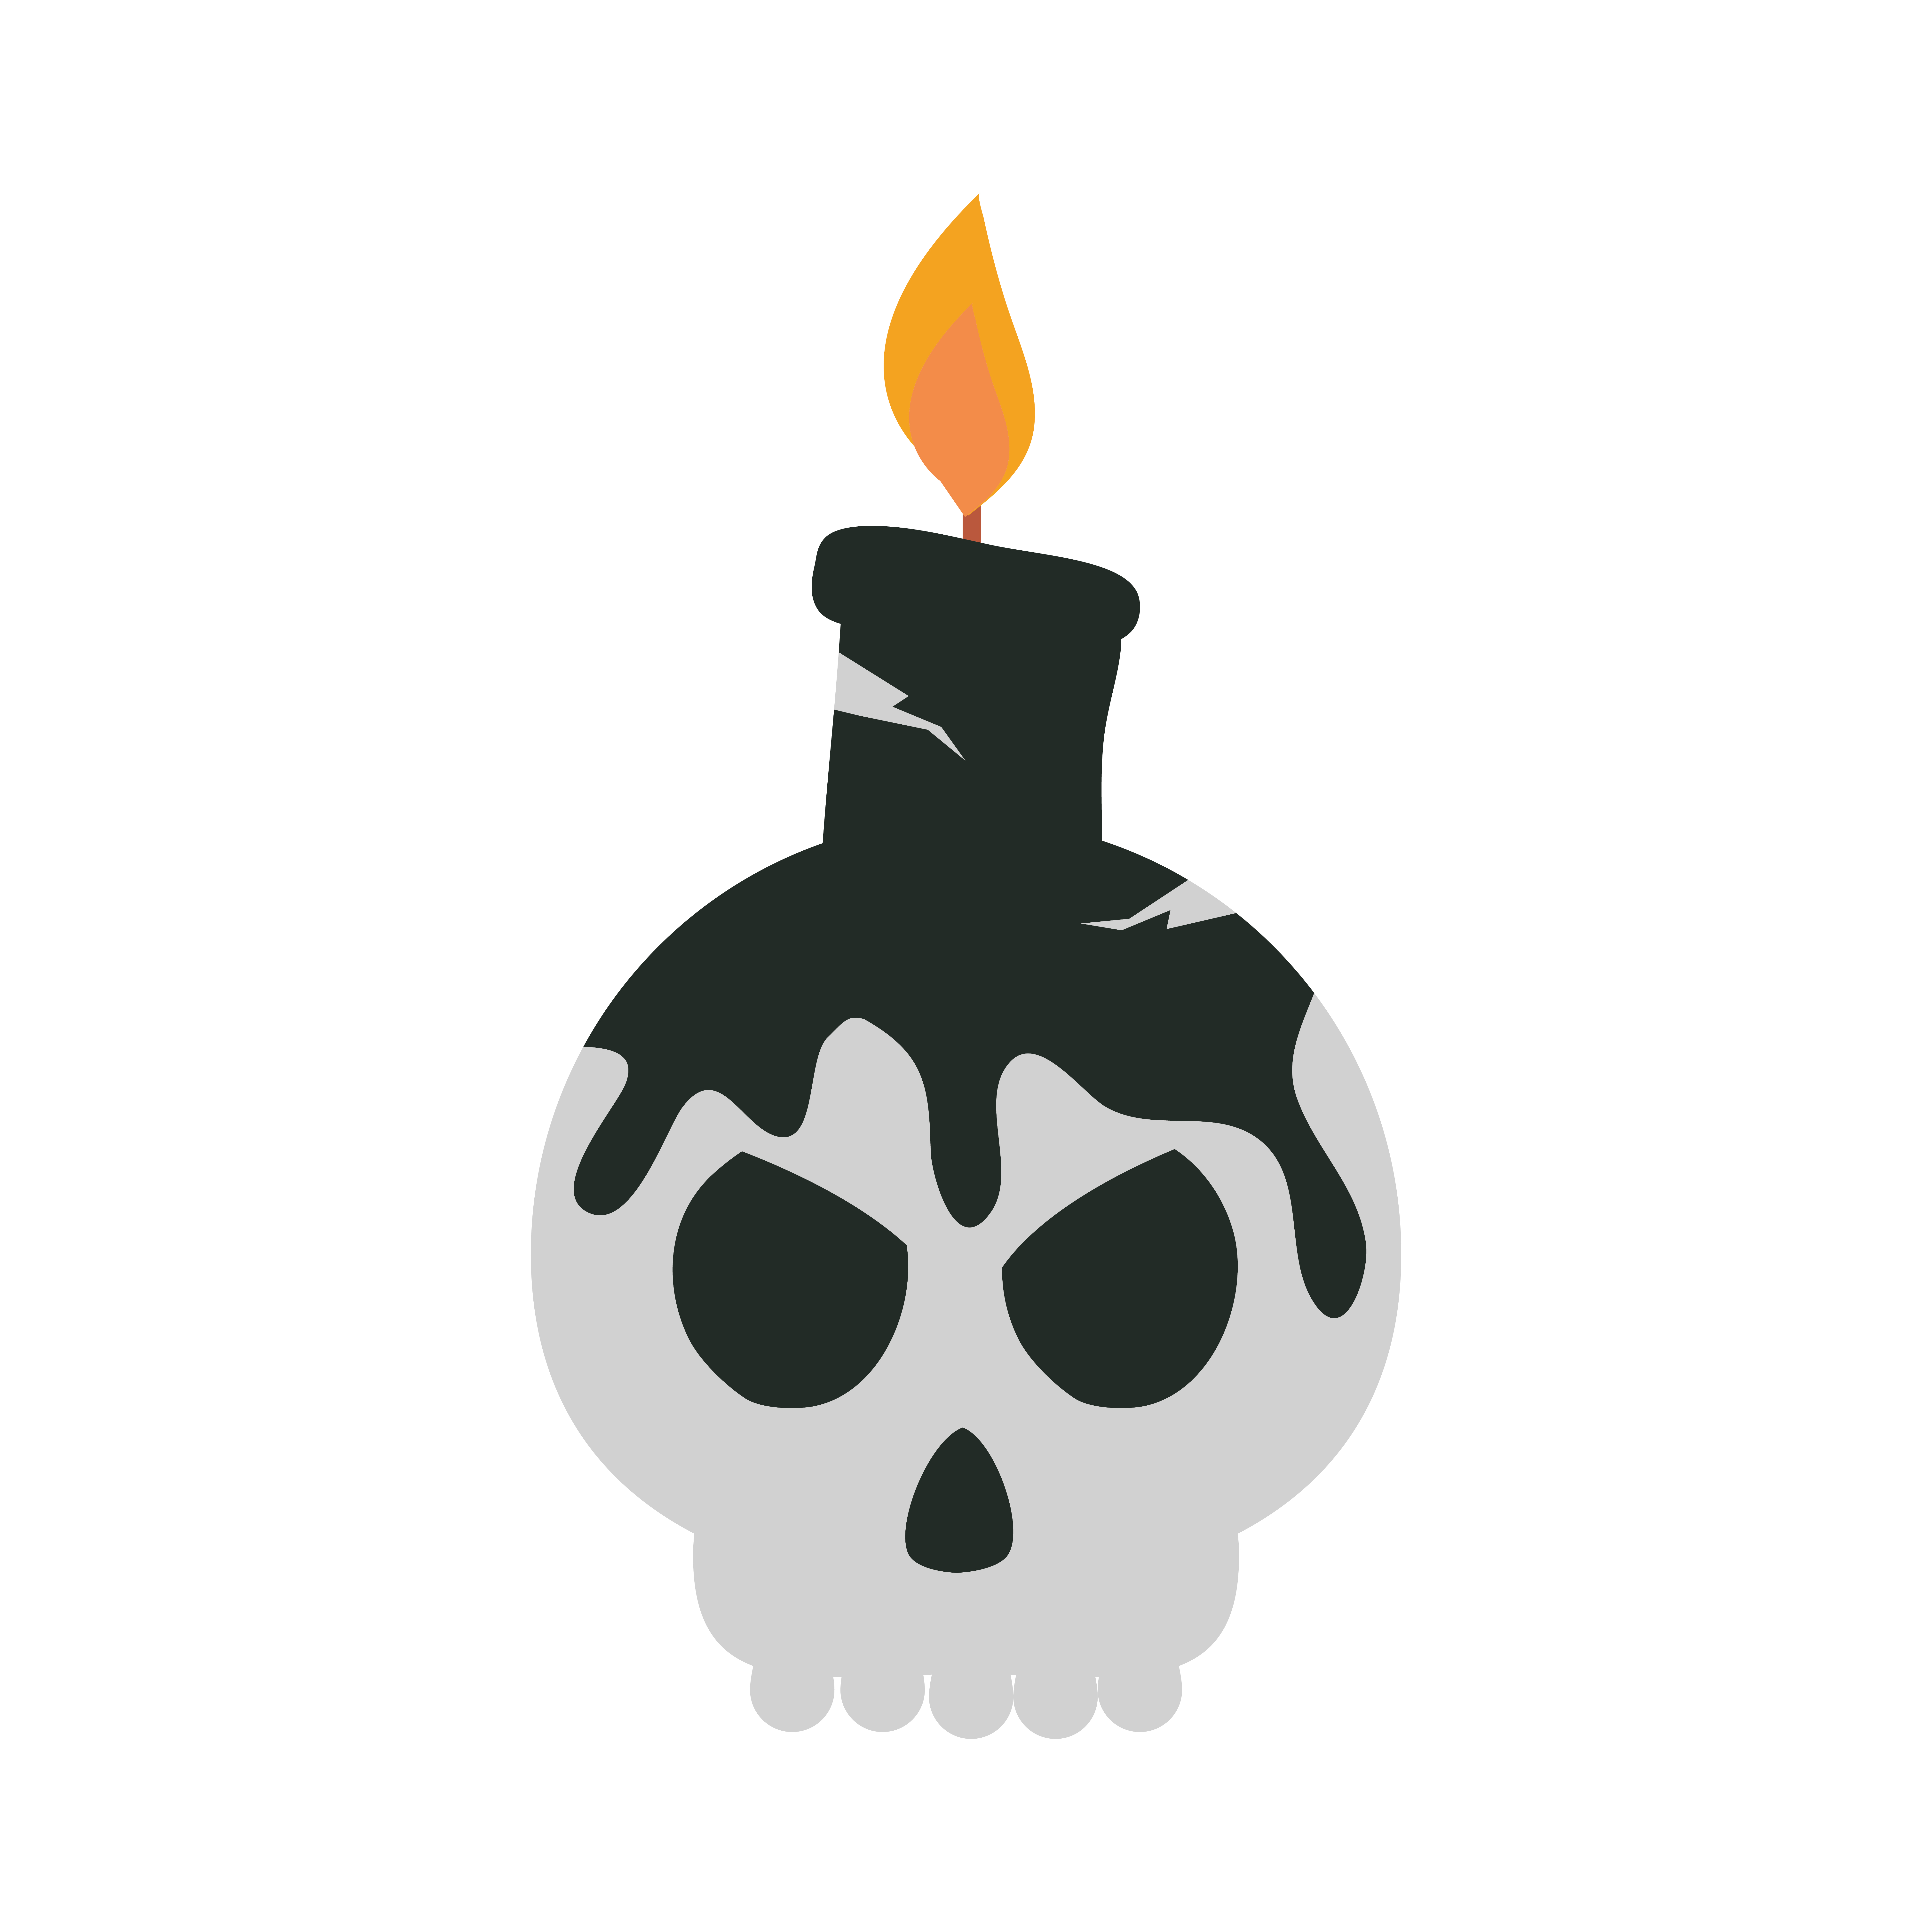 Walging Ontwaken Wordt erger gelukkige halloween-schedel met brandend kaarstrick or treat-feestviering  plat pictogramontwerp 2605410 Vectorkunst bij Vecteezy